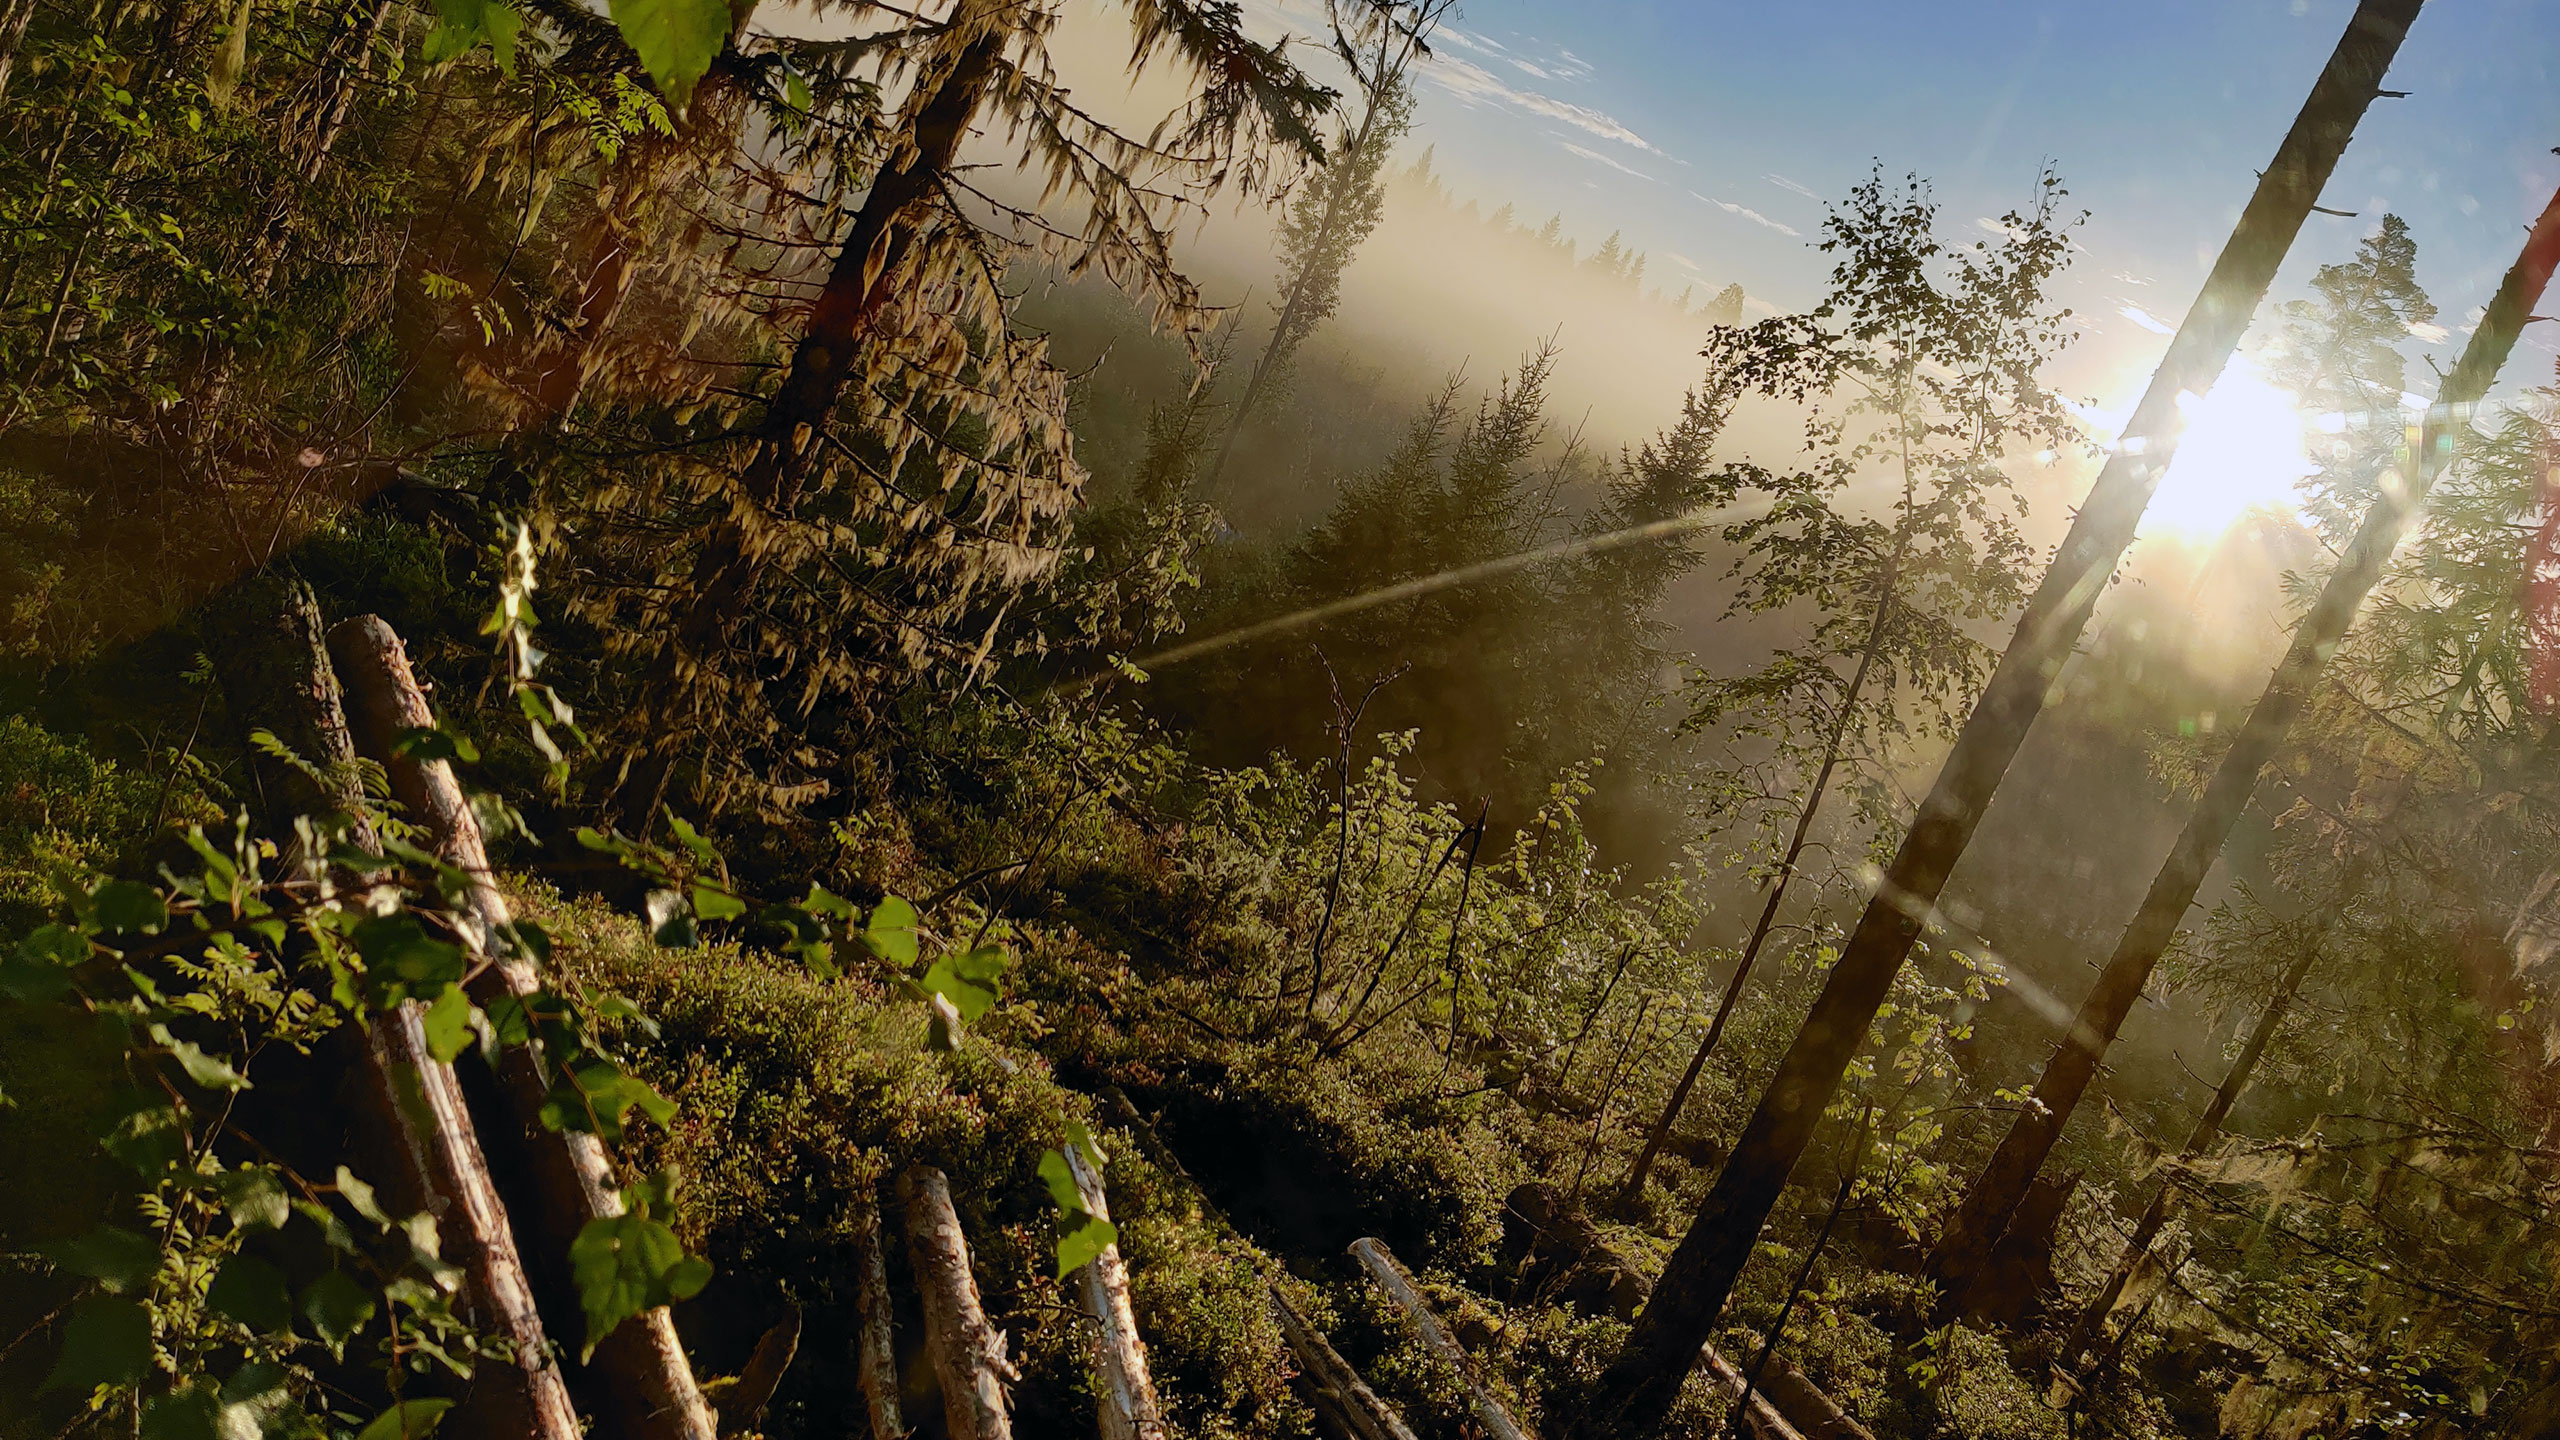 Komatsu Forestin valokuvauskilpailu elokuu 2020, 3. palkinto: Timo Laaksokivi